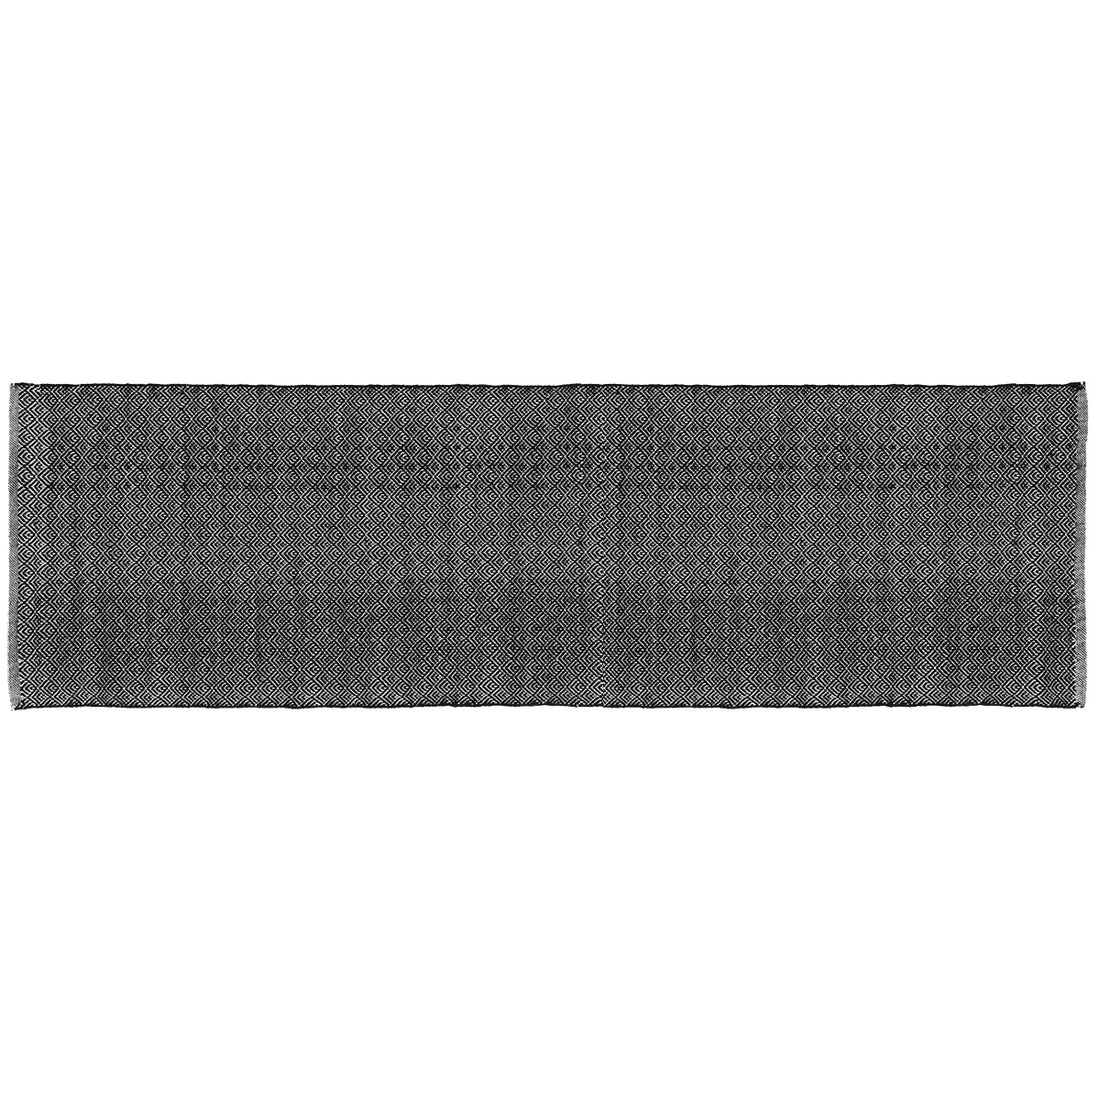 Liv Interior Fan Teppich Muster schwarz 70 x 250 cm Baumwolle